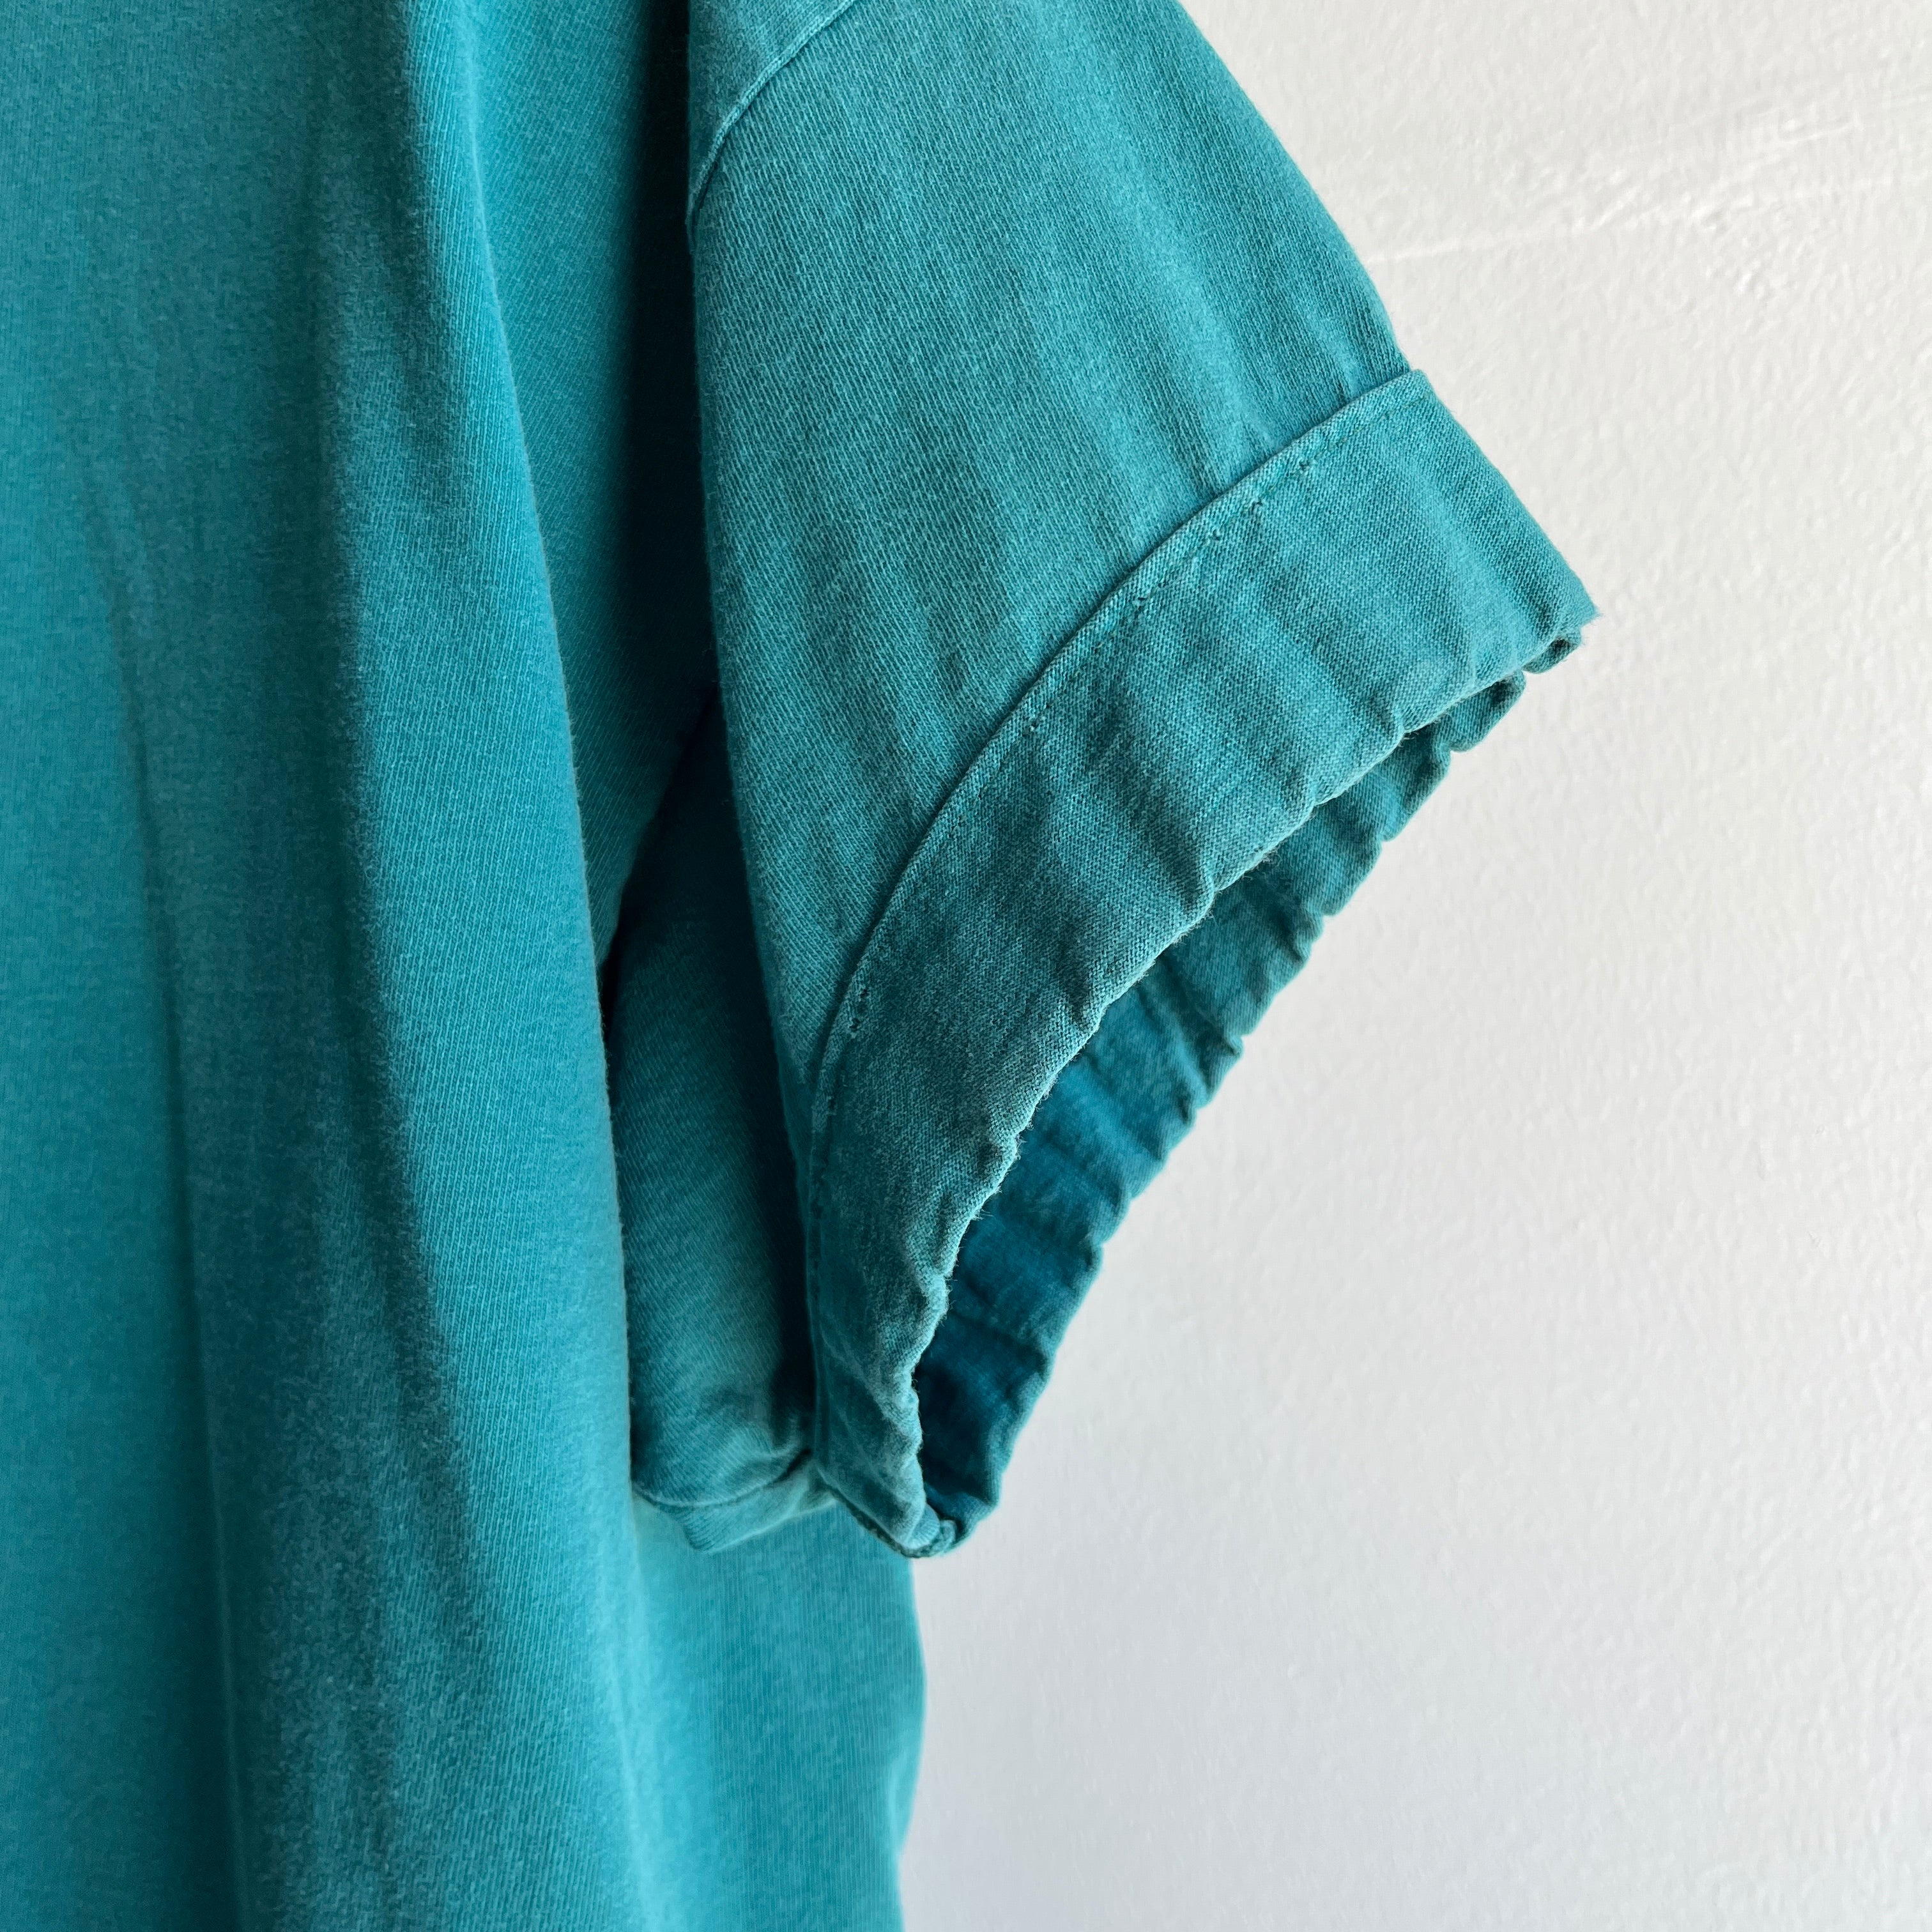 1990s DIY Sleeve Cuff Deep Ultramarine/Teal Cotton T-Shirt by HHW